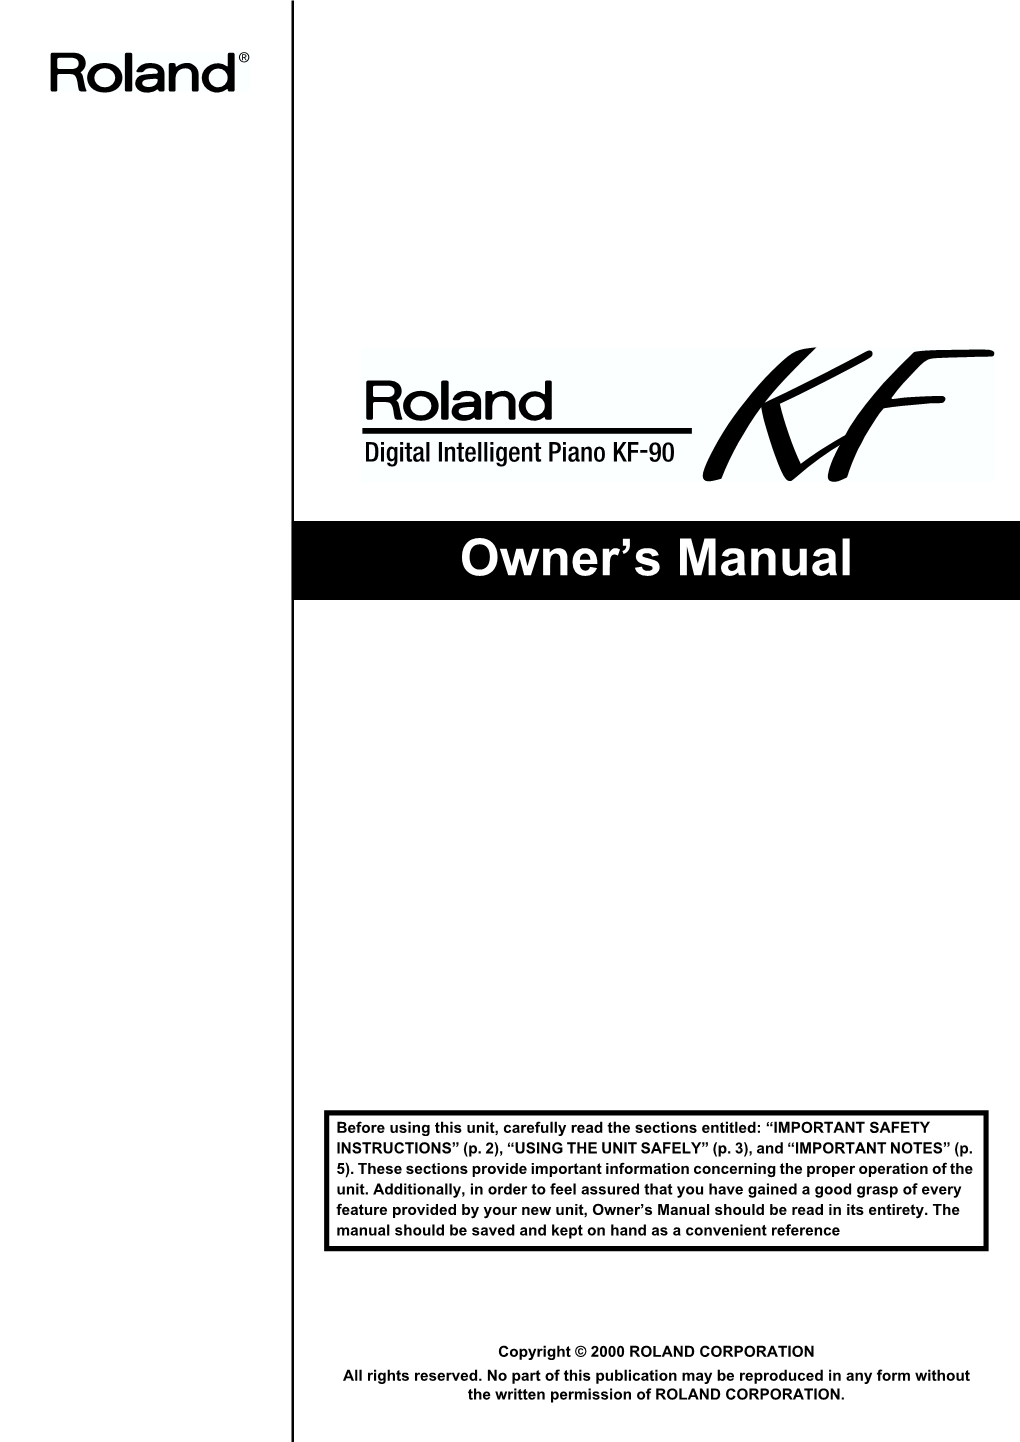 KF-90 Owner's Manual